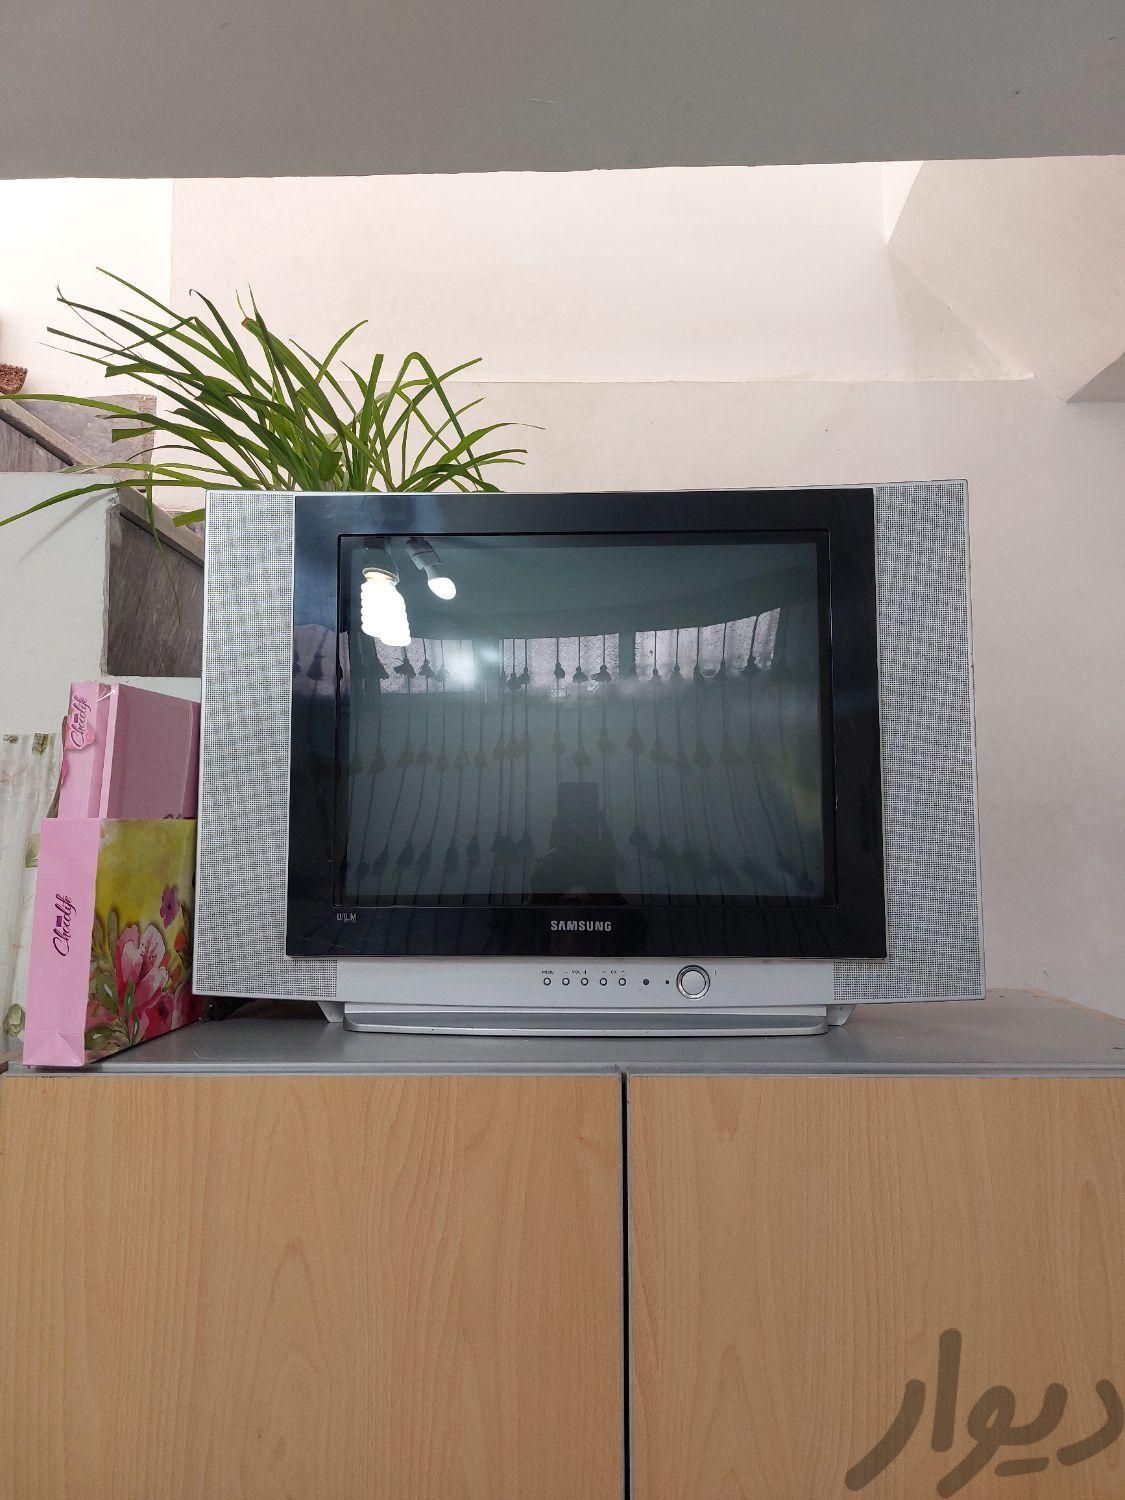 تلویزیون قدیمی سامسونگ به همراه گیرنده دیجیتال|سایر لوازم برقی|اردبیل, |دیوار